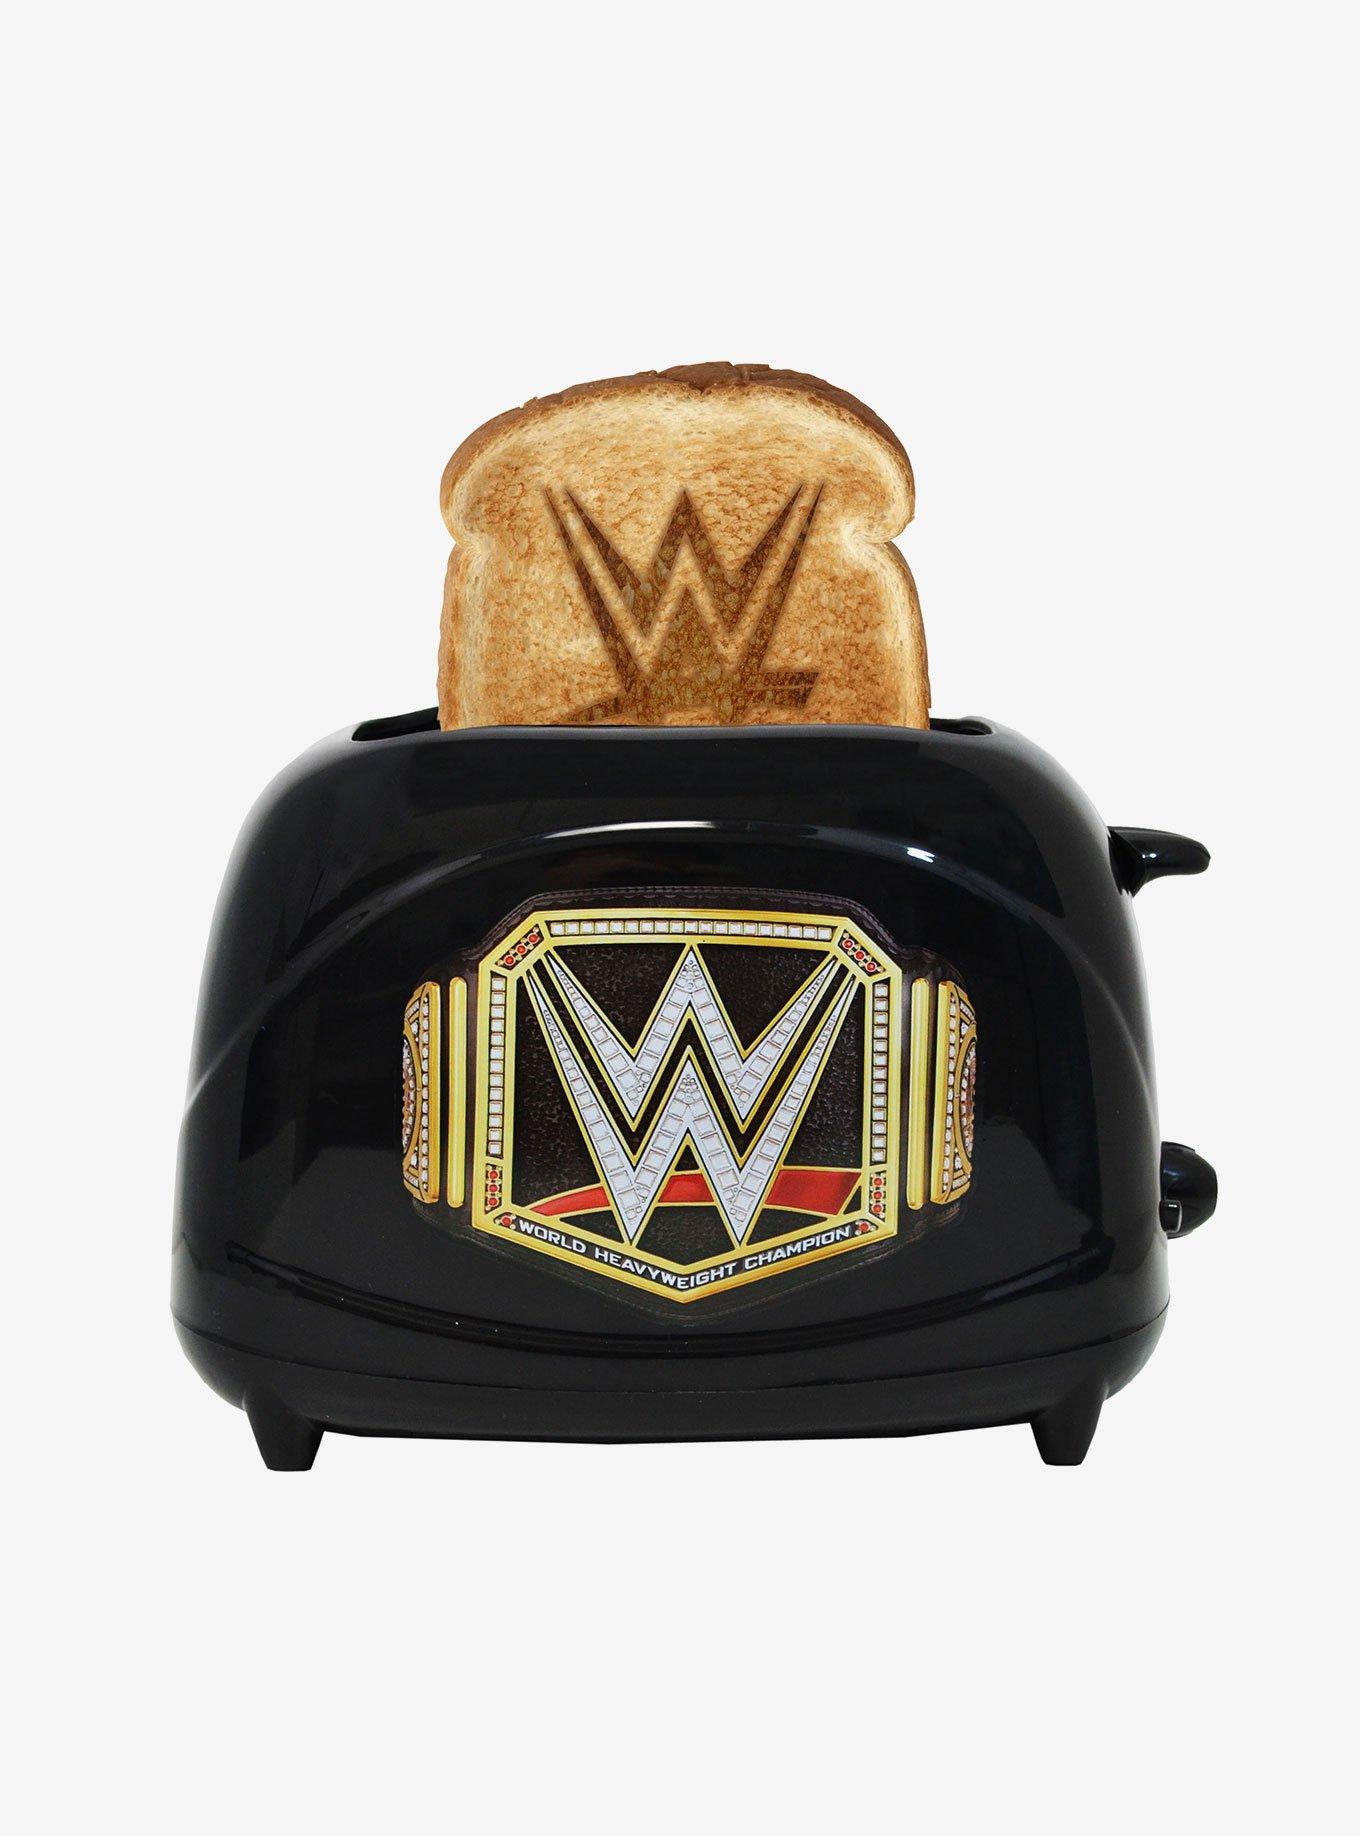 WWE Championship Belt Toaster, , hi-res